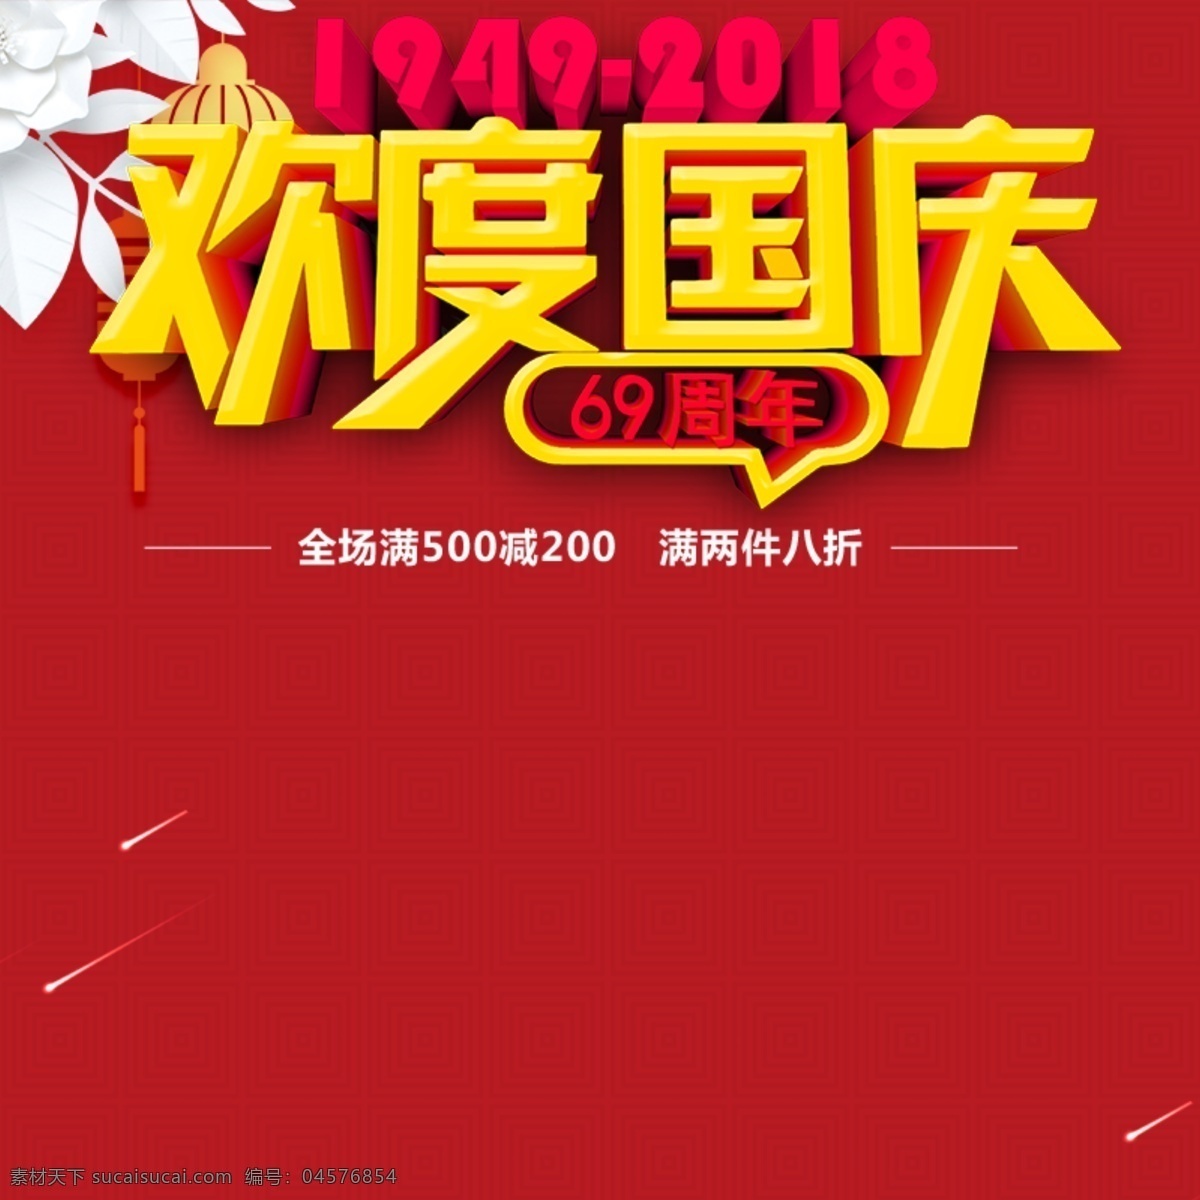 淘宝 欢度国庆 促销 主 图 国庆 主图 红色 欢度 69周年 1949 2018